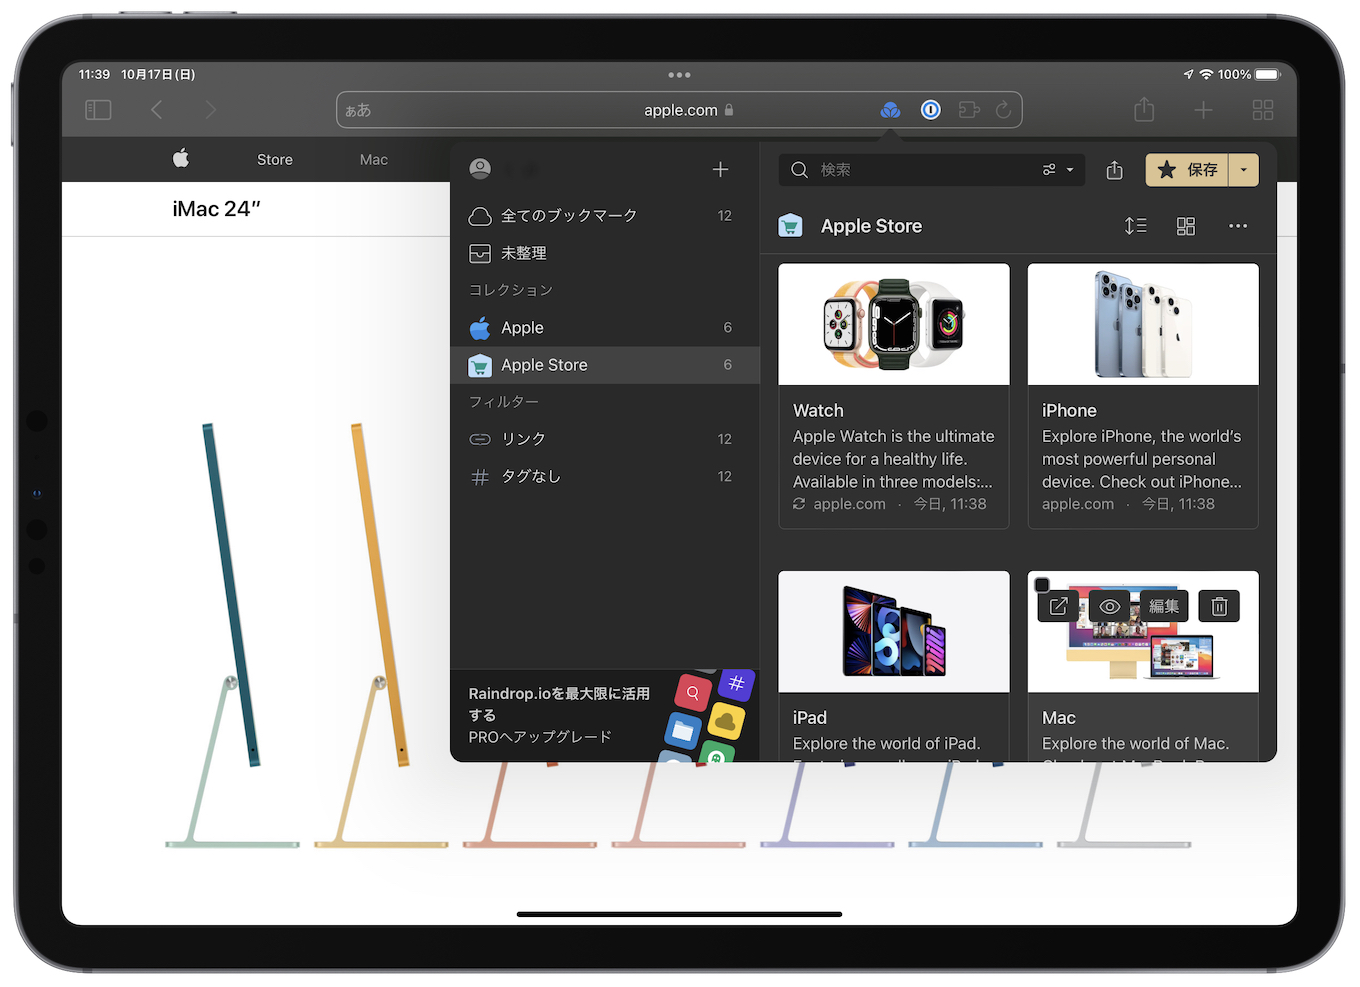 Raindrop io support iOS 15 Safari Extension